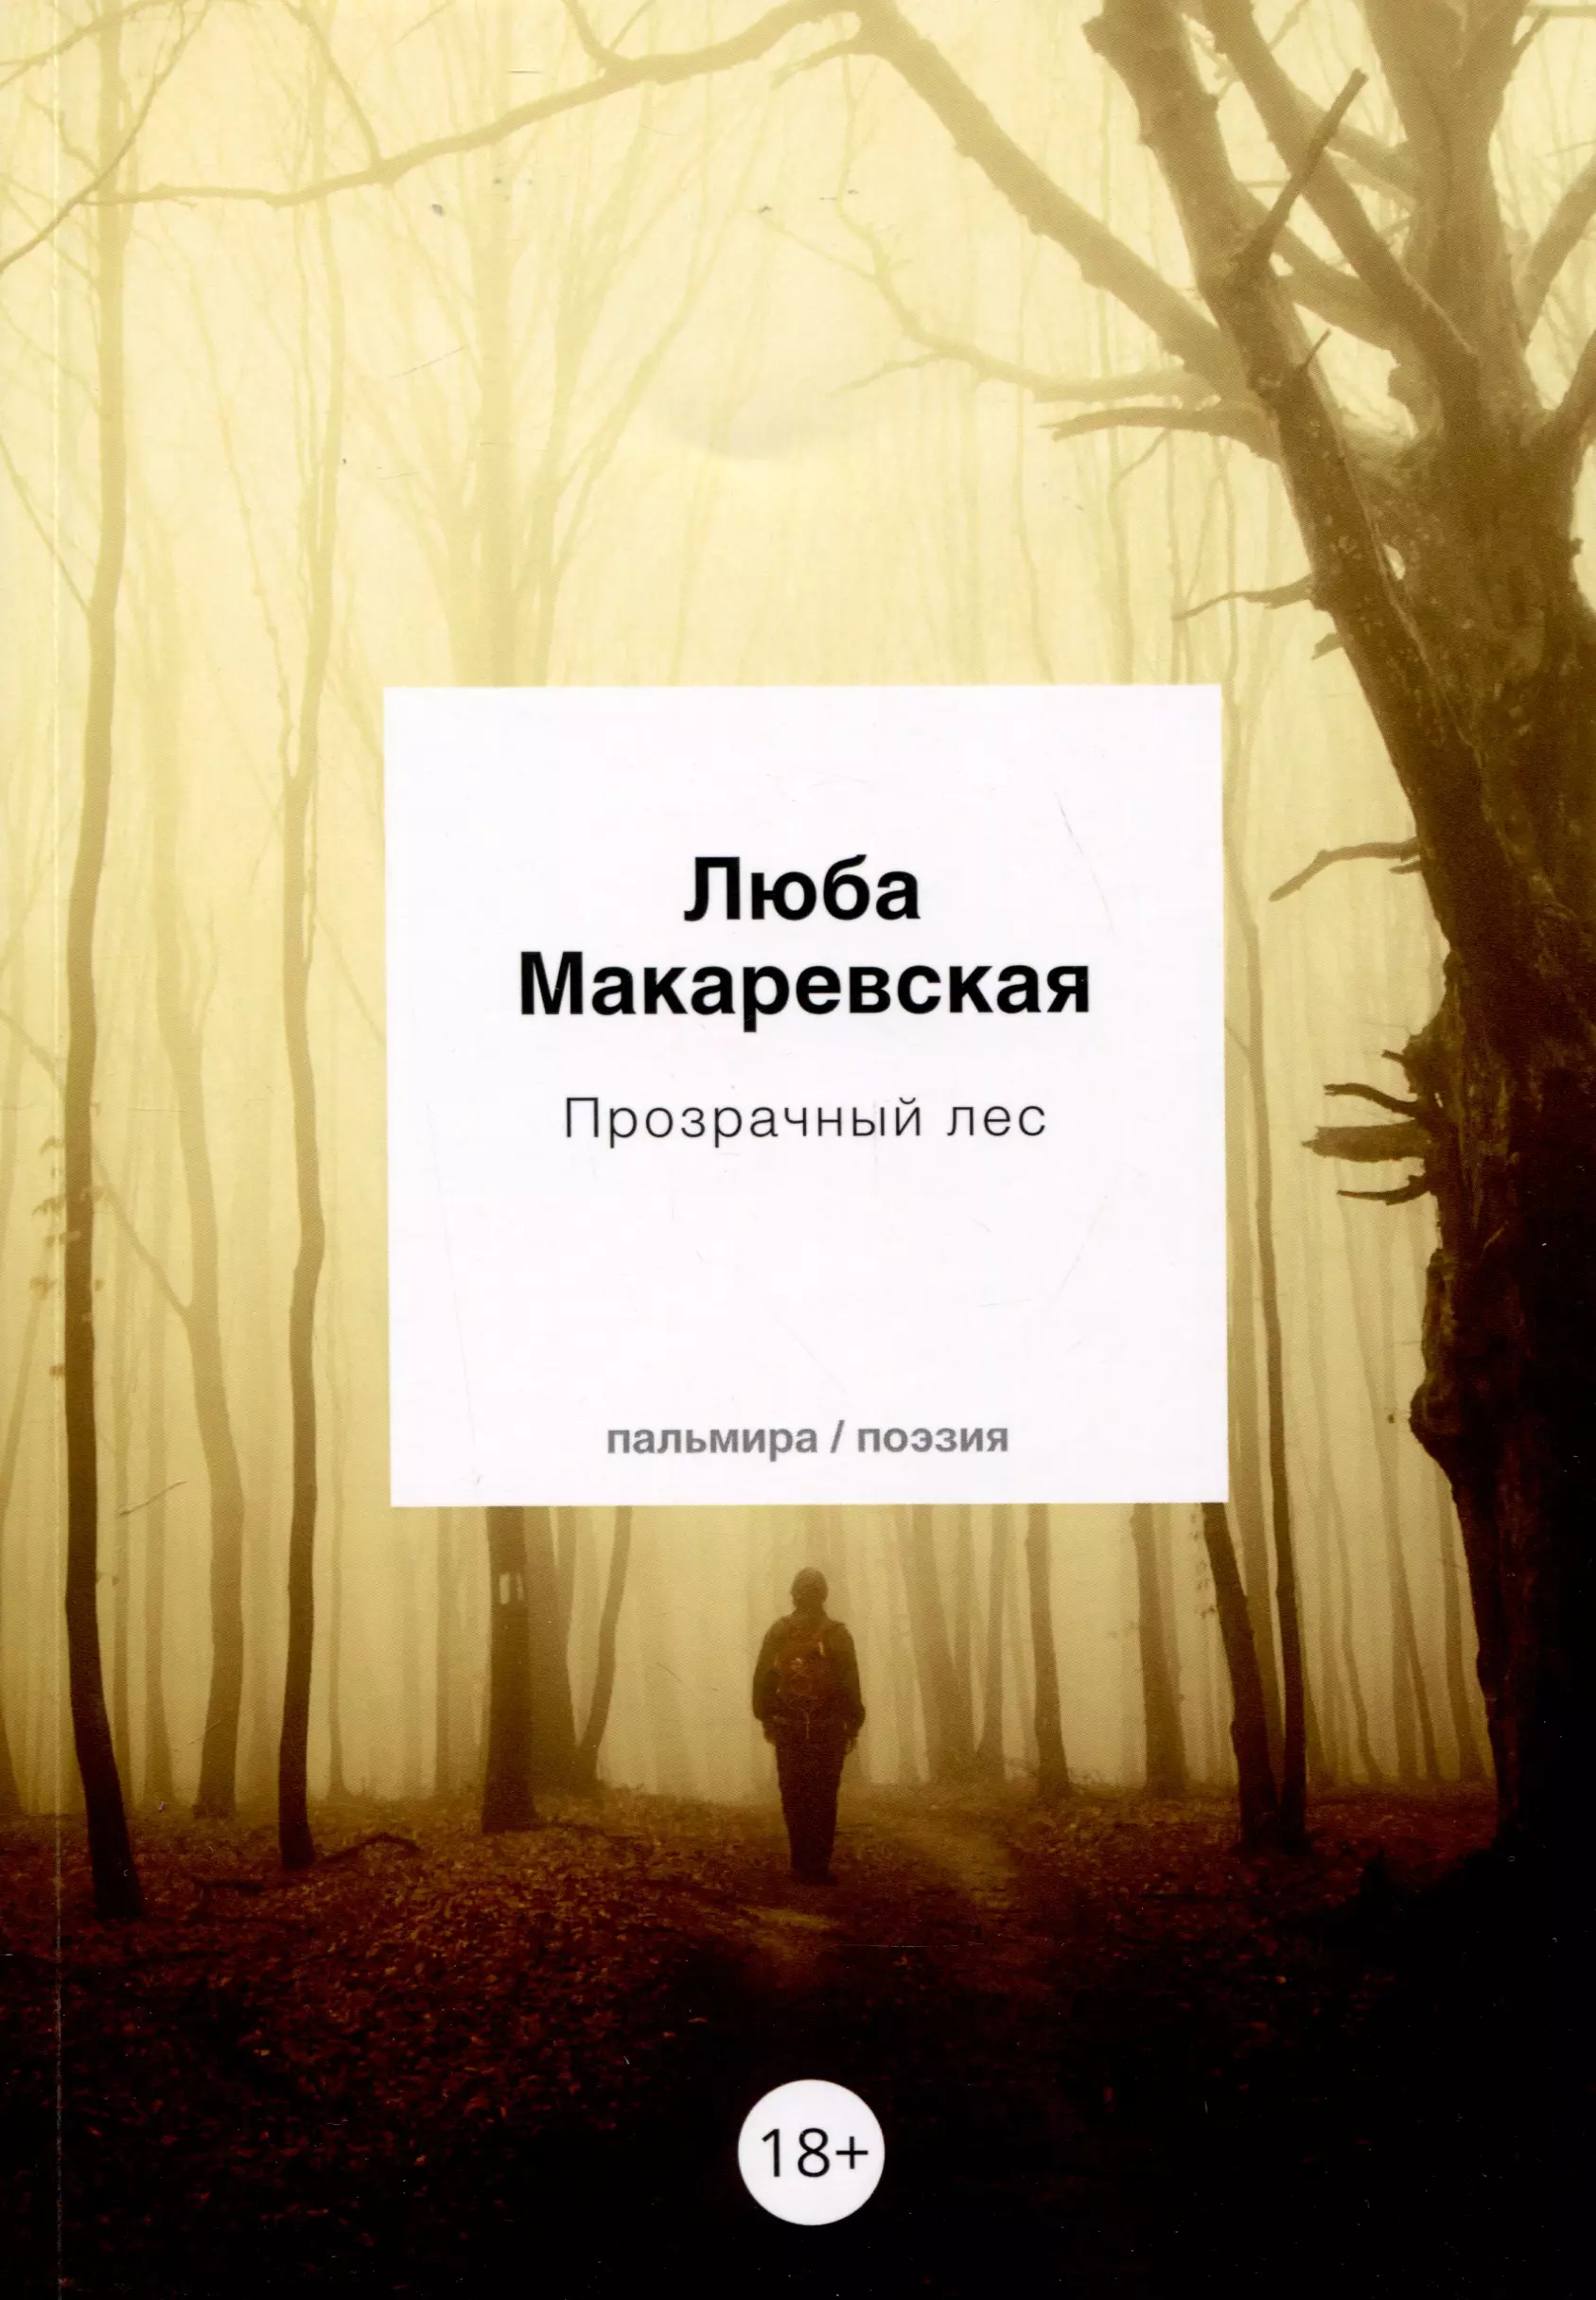 макаревская люба олеговна еще один опыт сияния Макаревская Любовь Олеговна Прозрачный лес